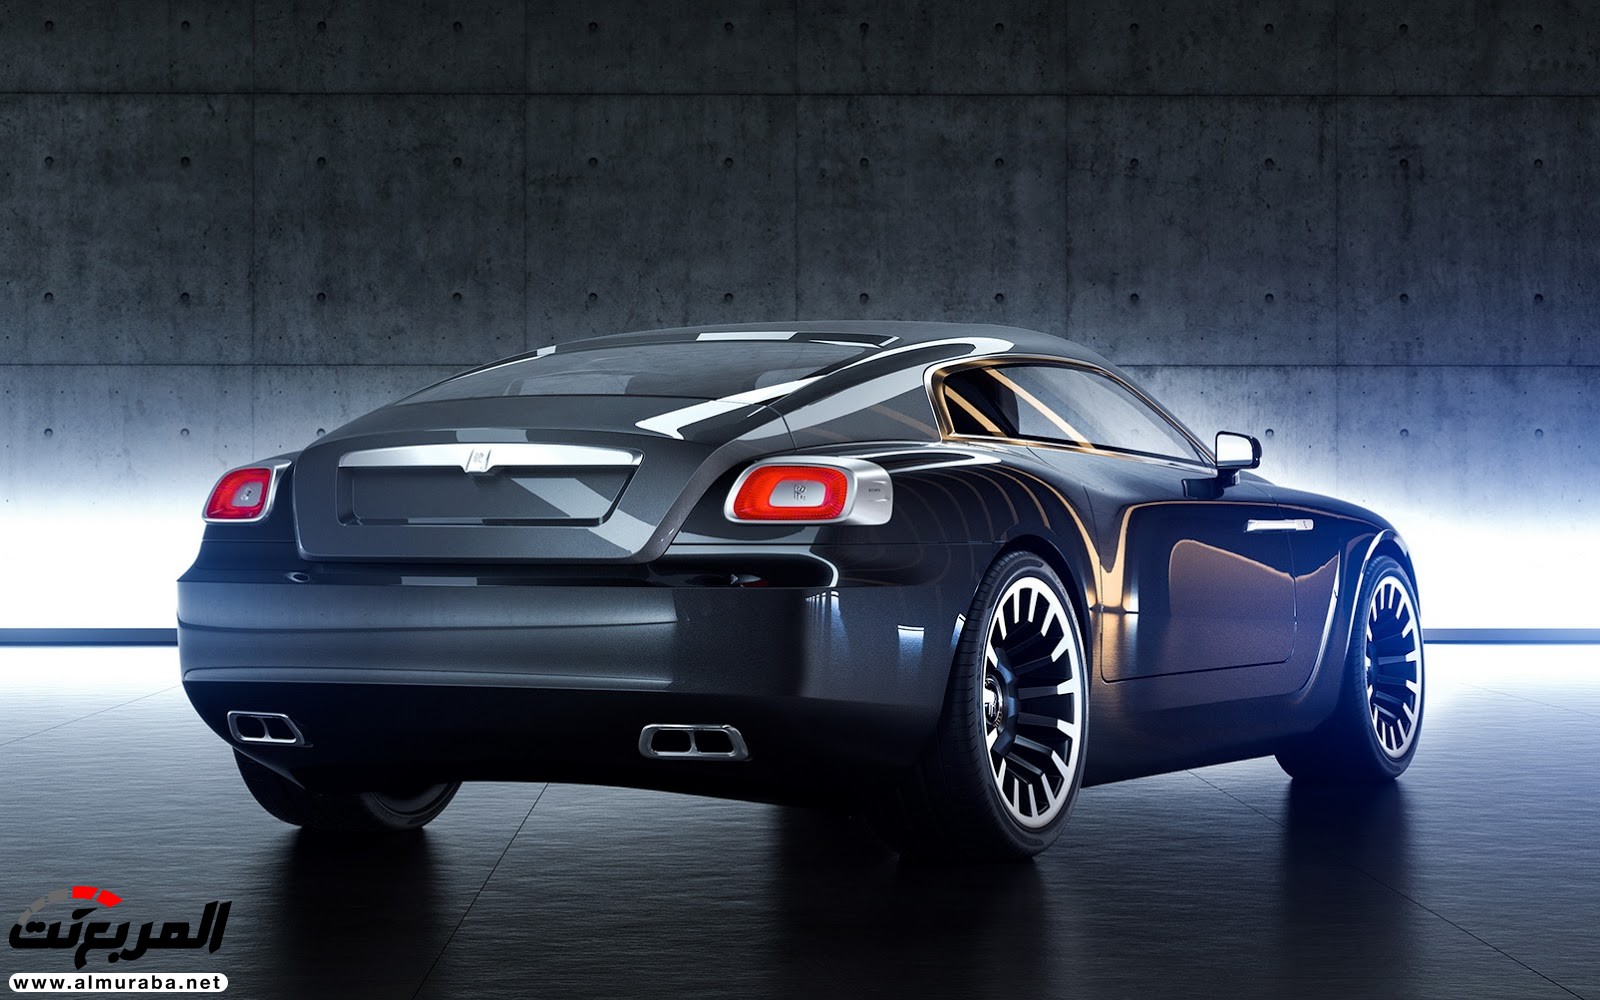 "صور افتراضية" لما يمكن أن تبدو عليه "رولز رويس" رايث كوبيه 2020 Rolls-Royce Wraith Coupe 62